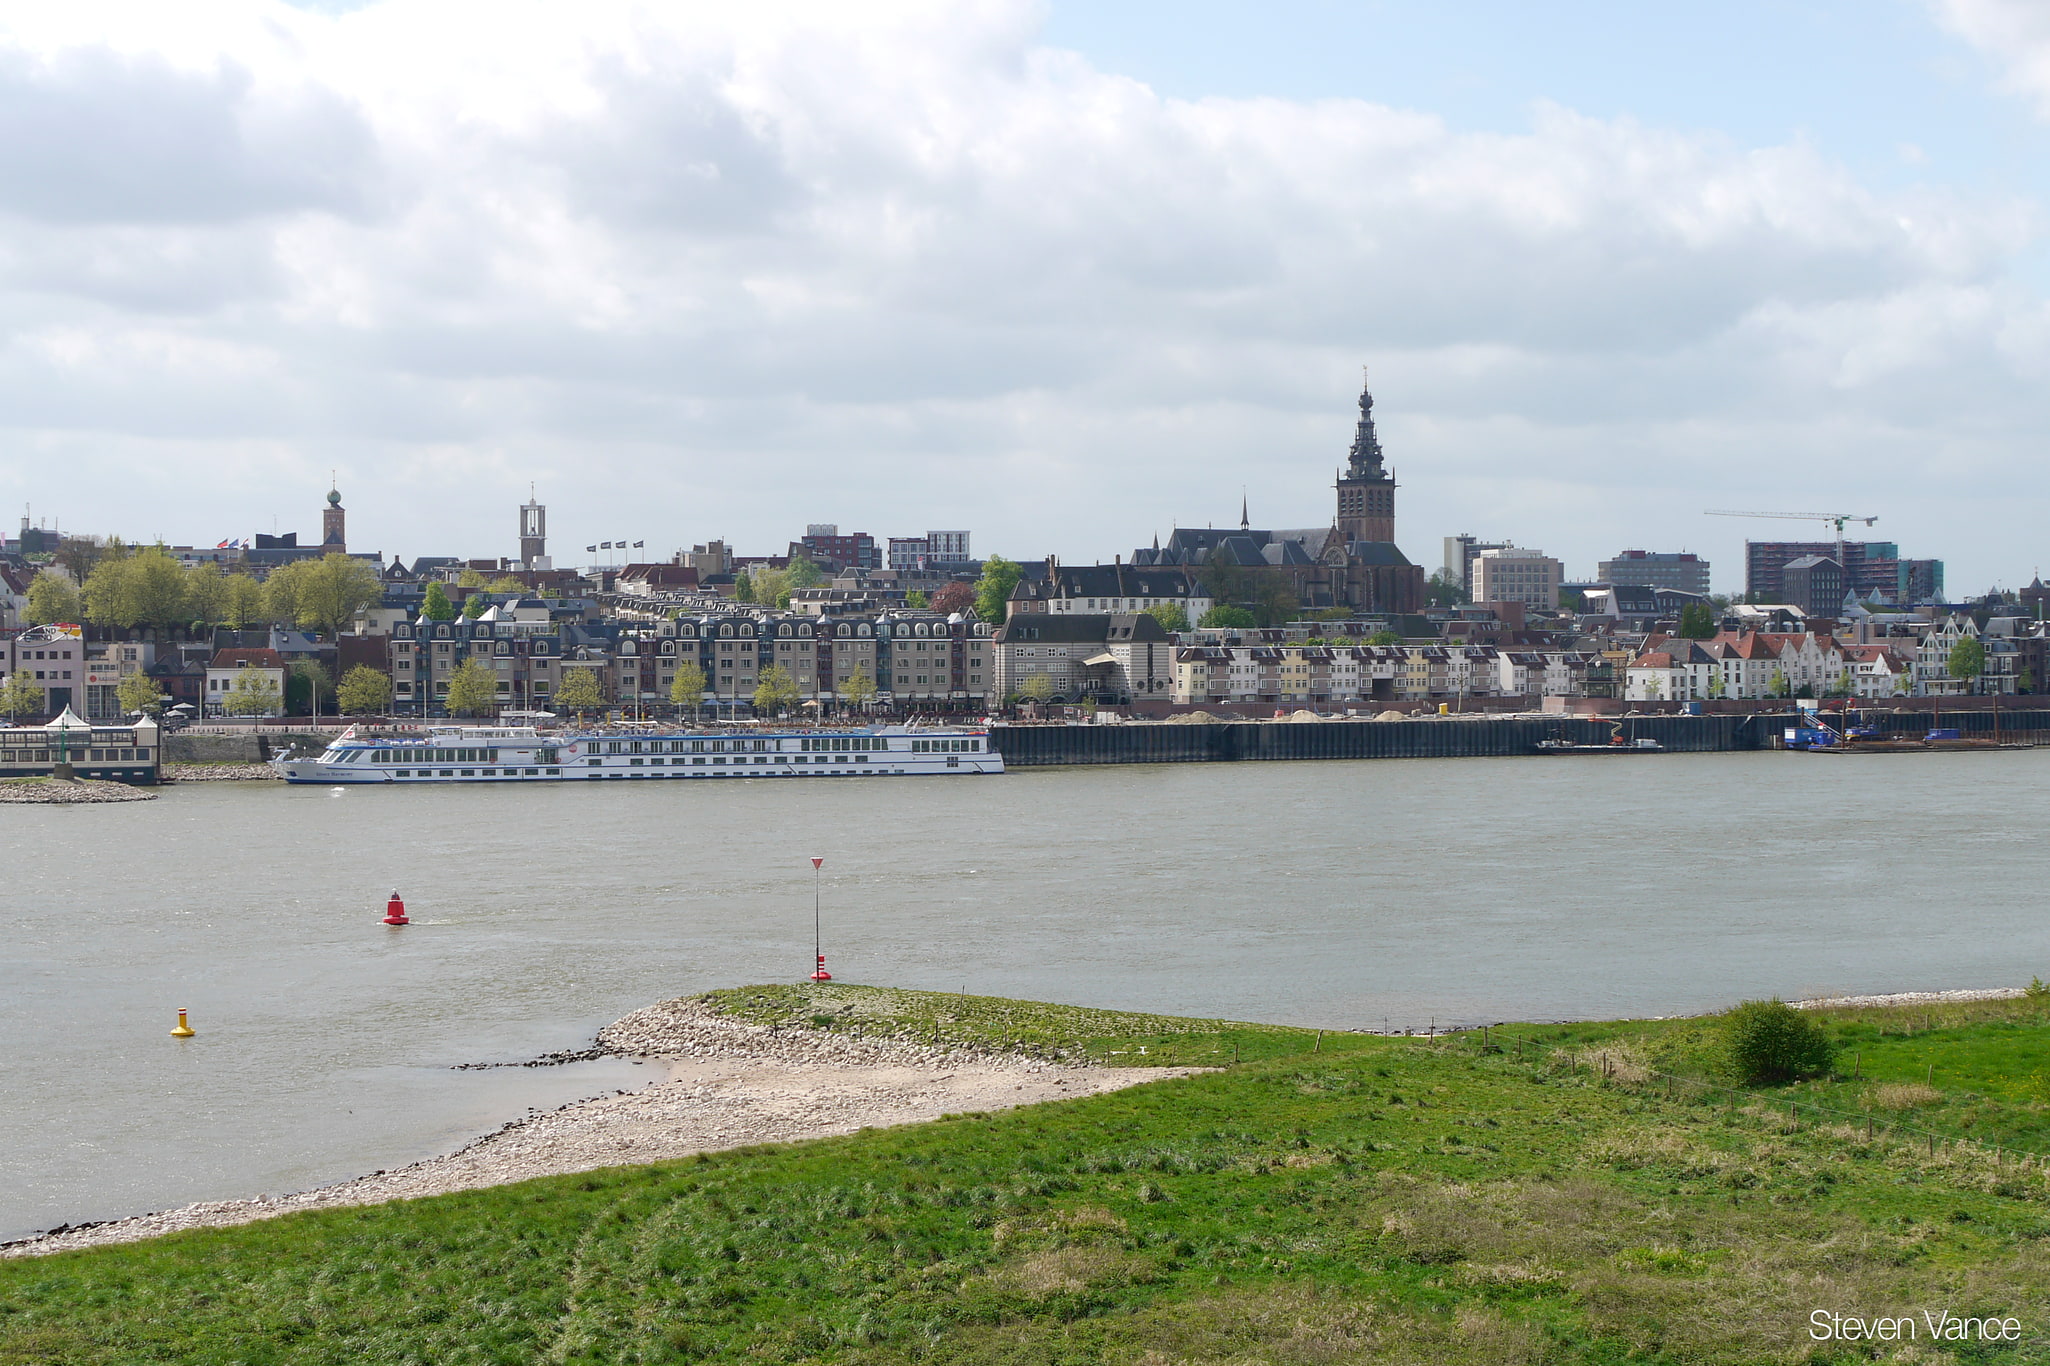 Nijmegen, Netherlands